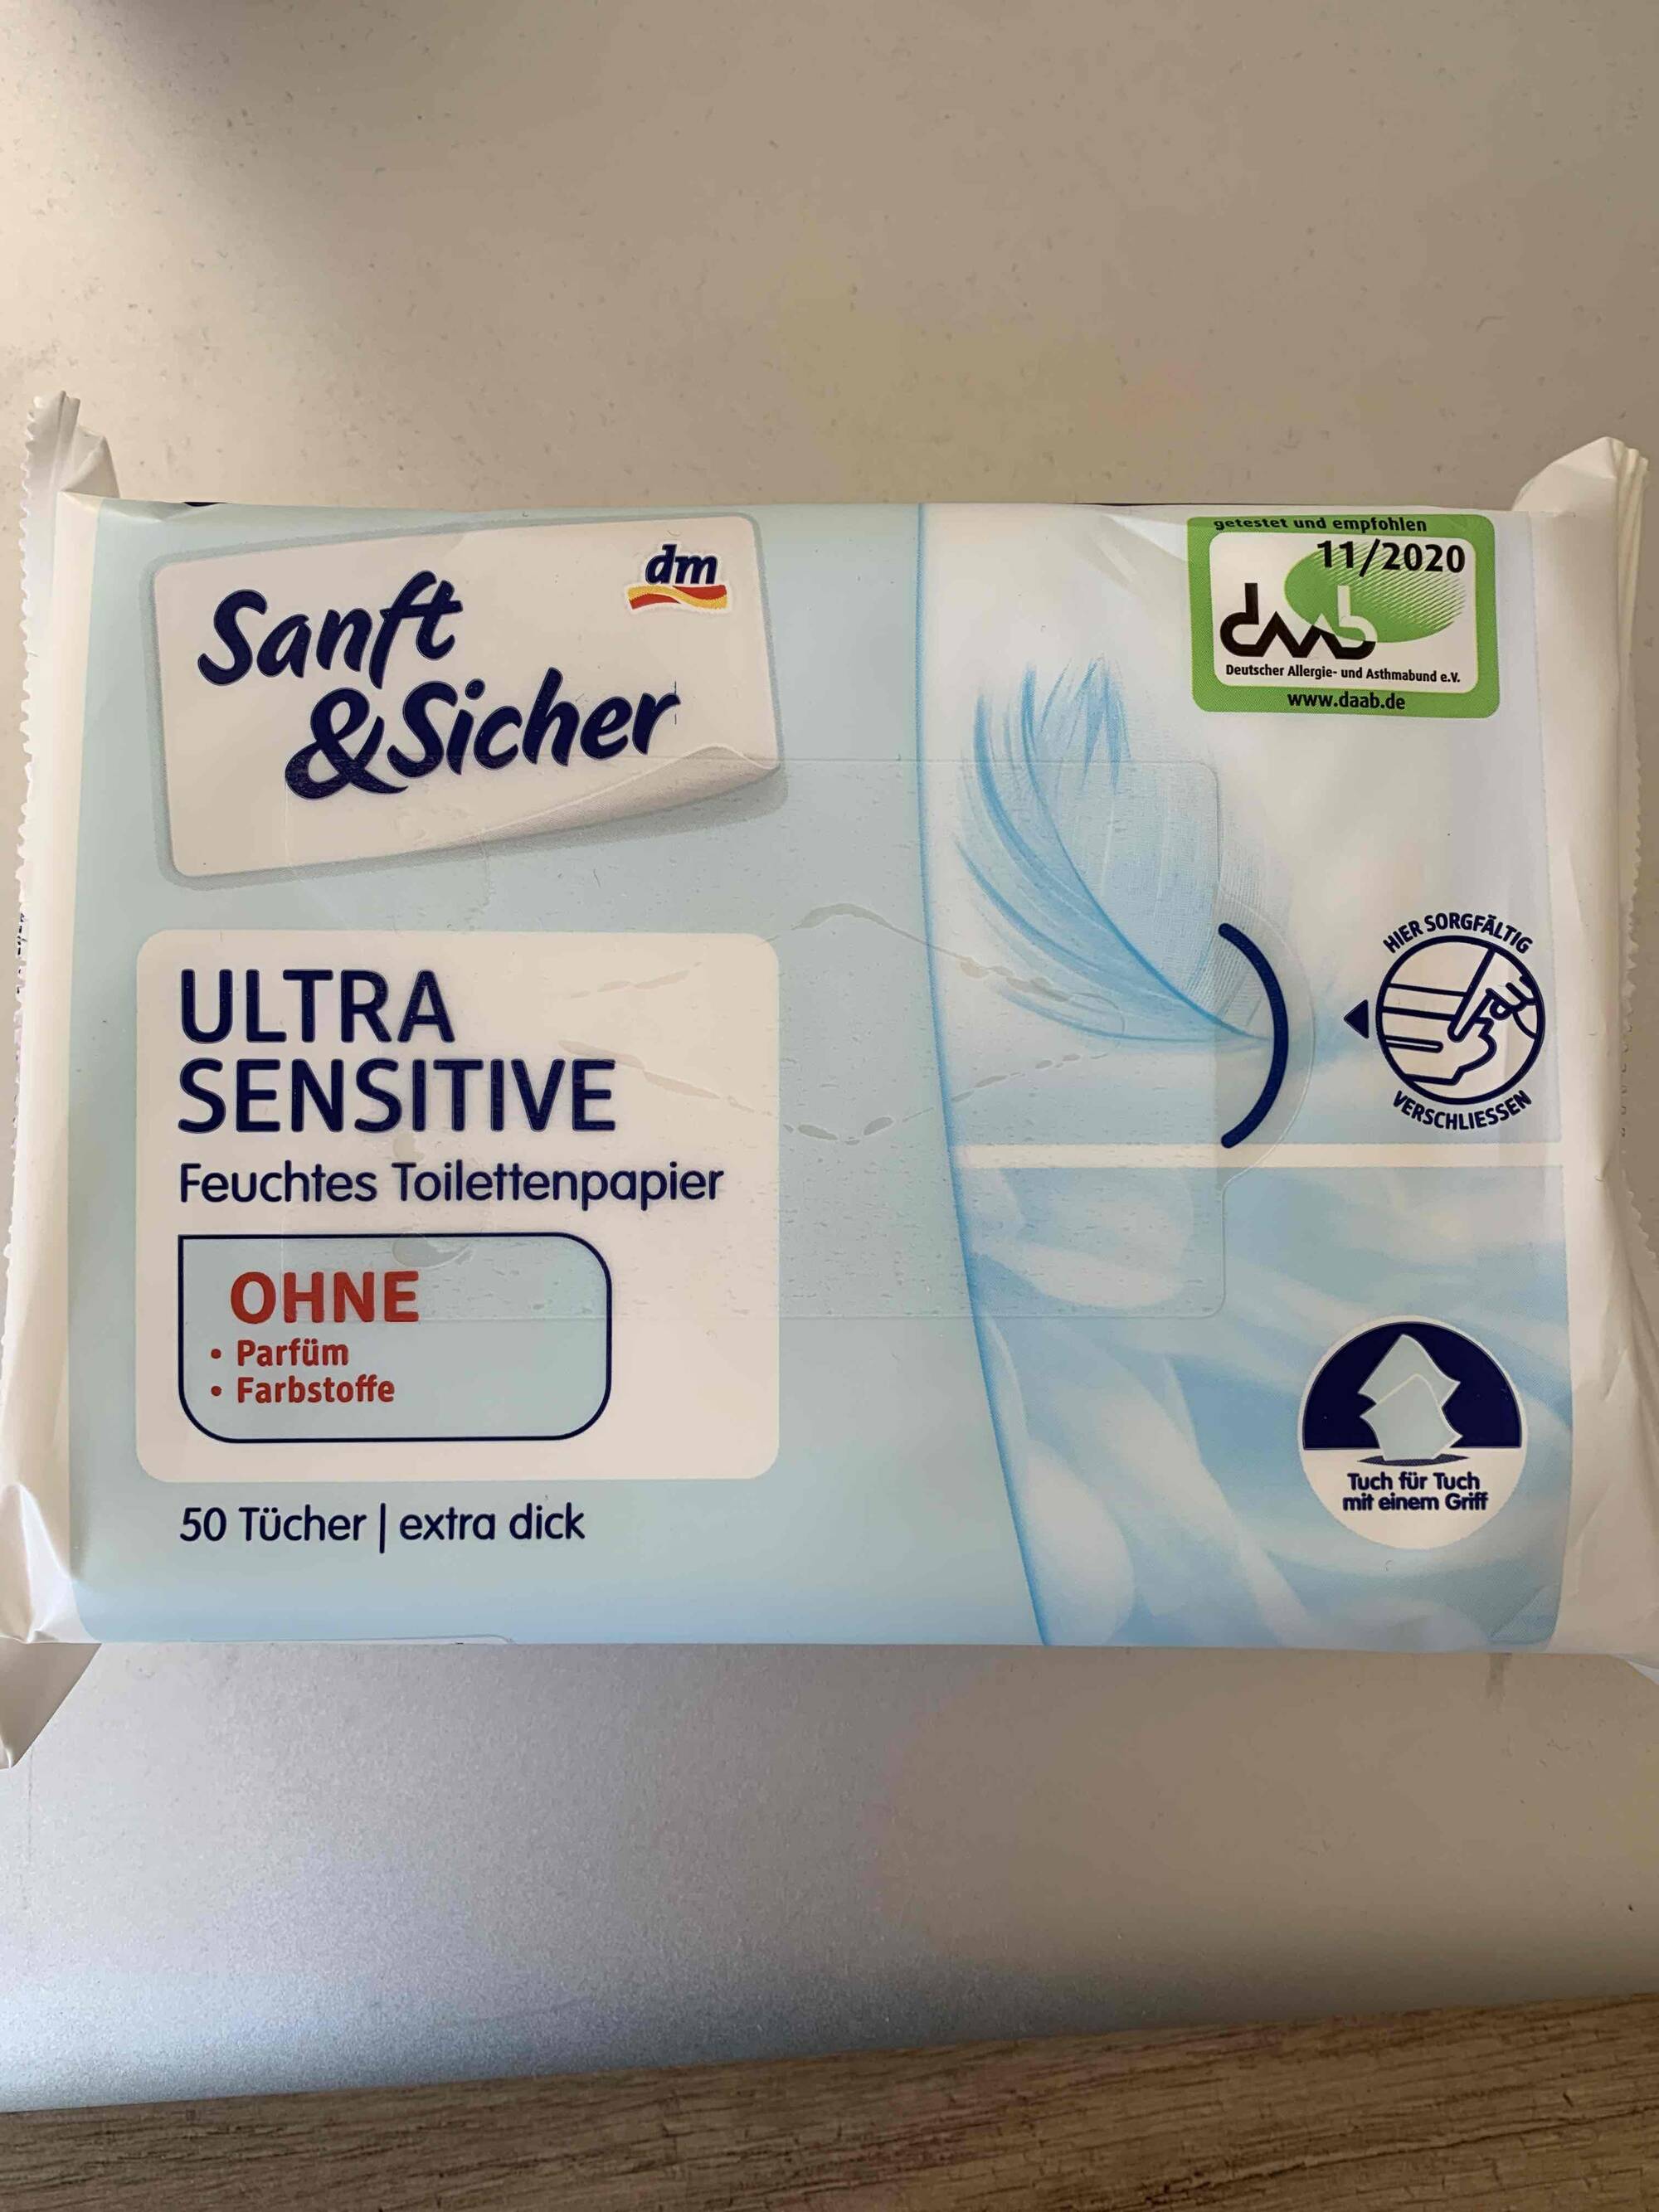 SANFT & SICHER - Feuchtes toilettenpapier ultra sensitive